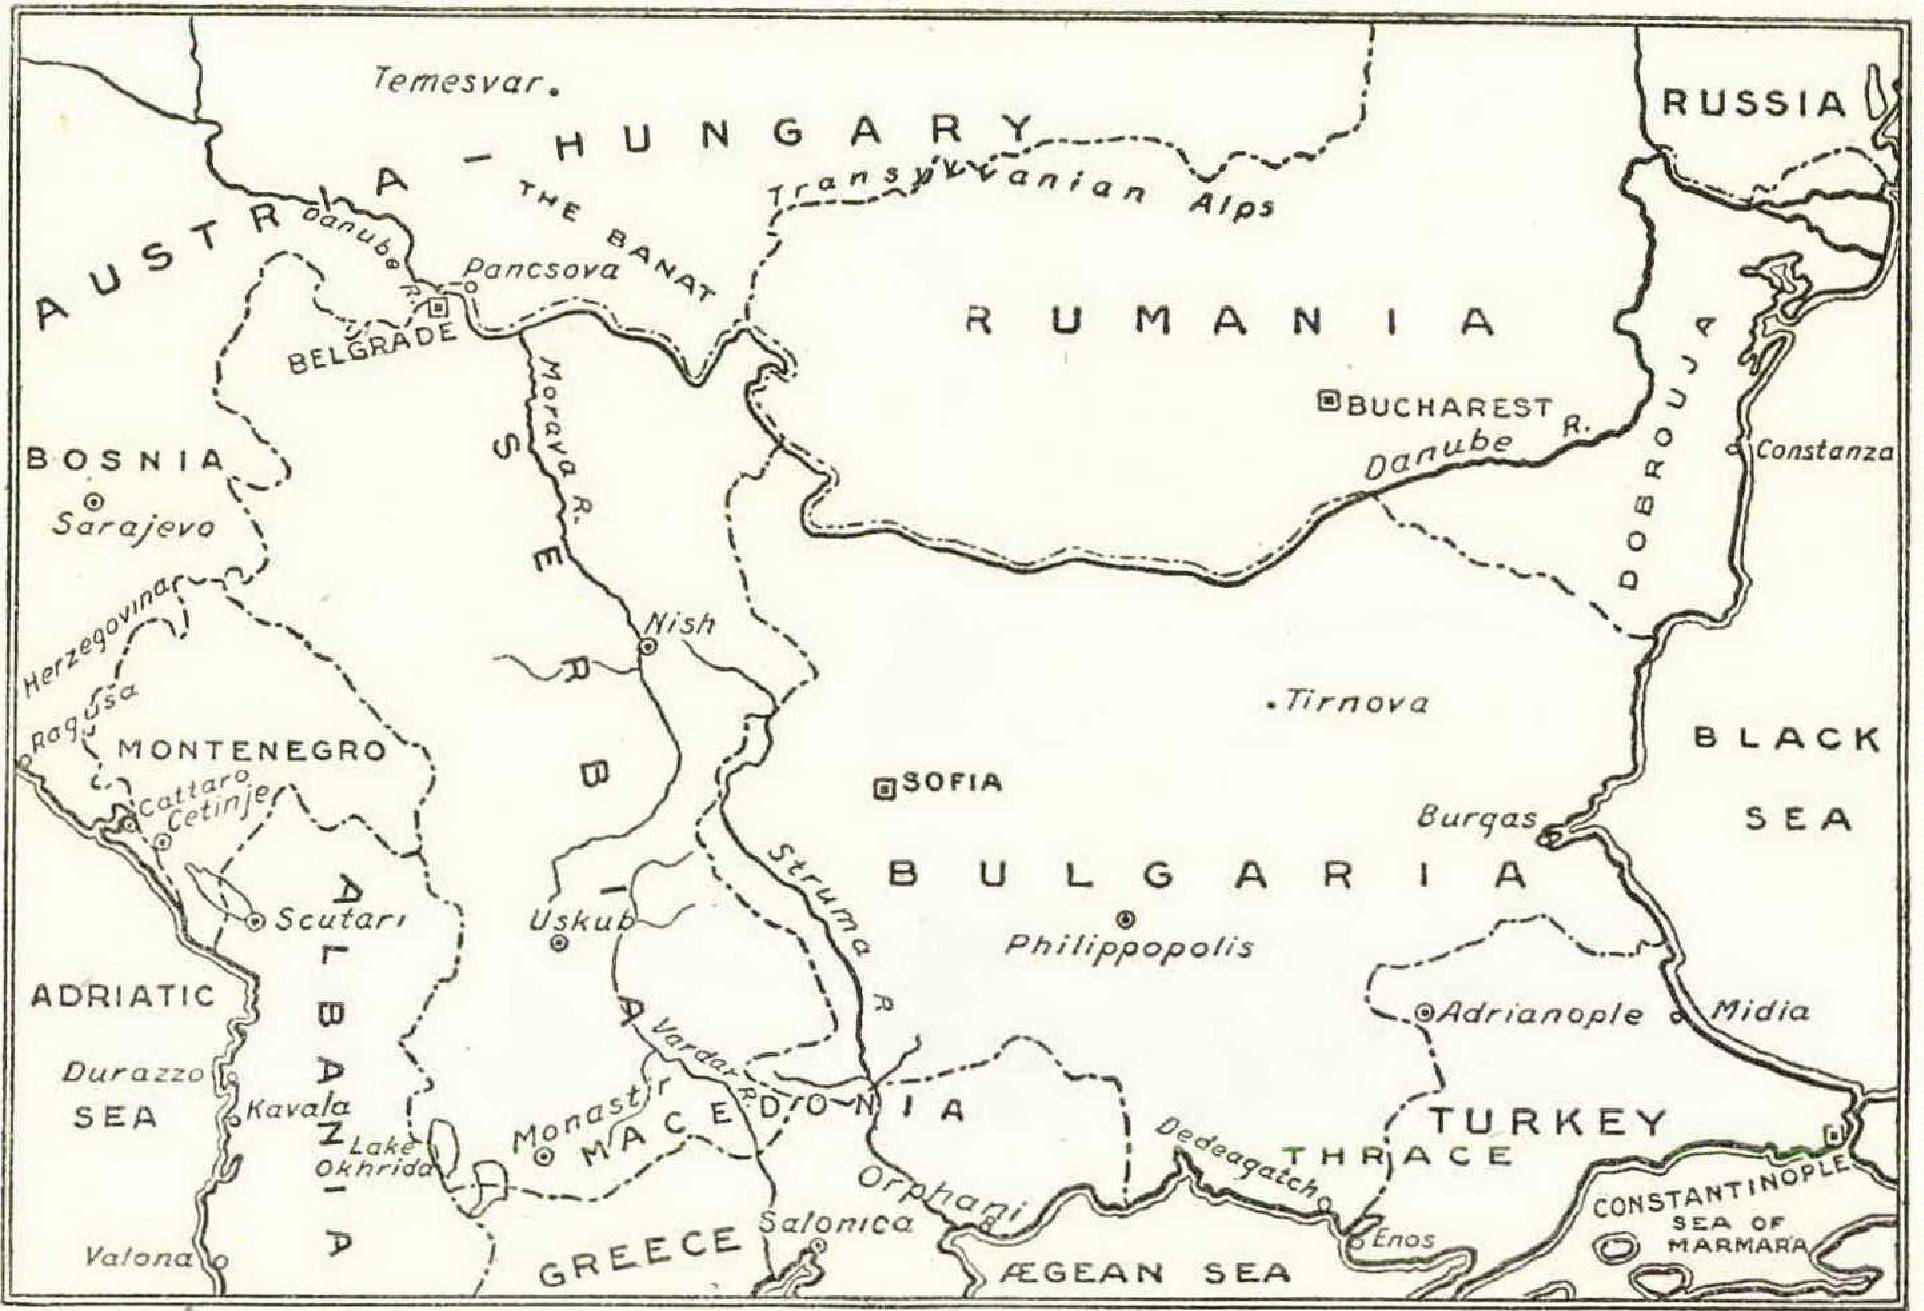 balkan peninsula 1914